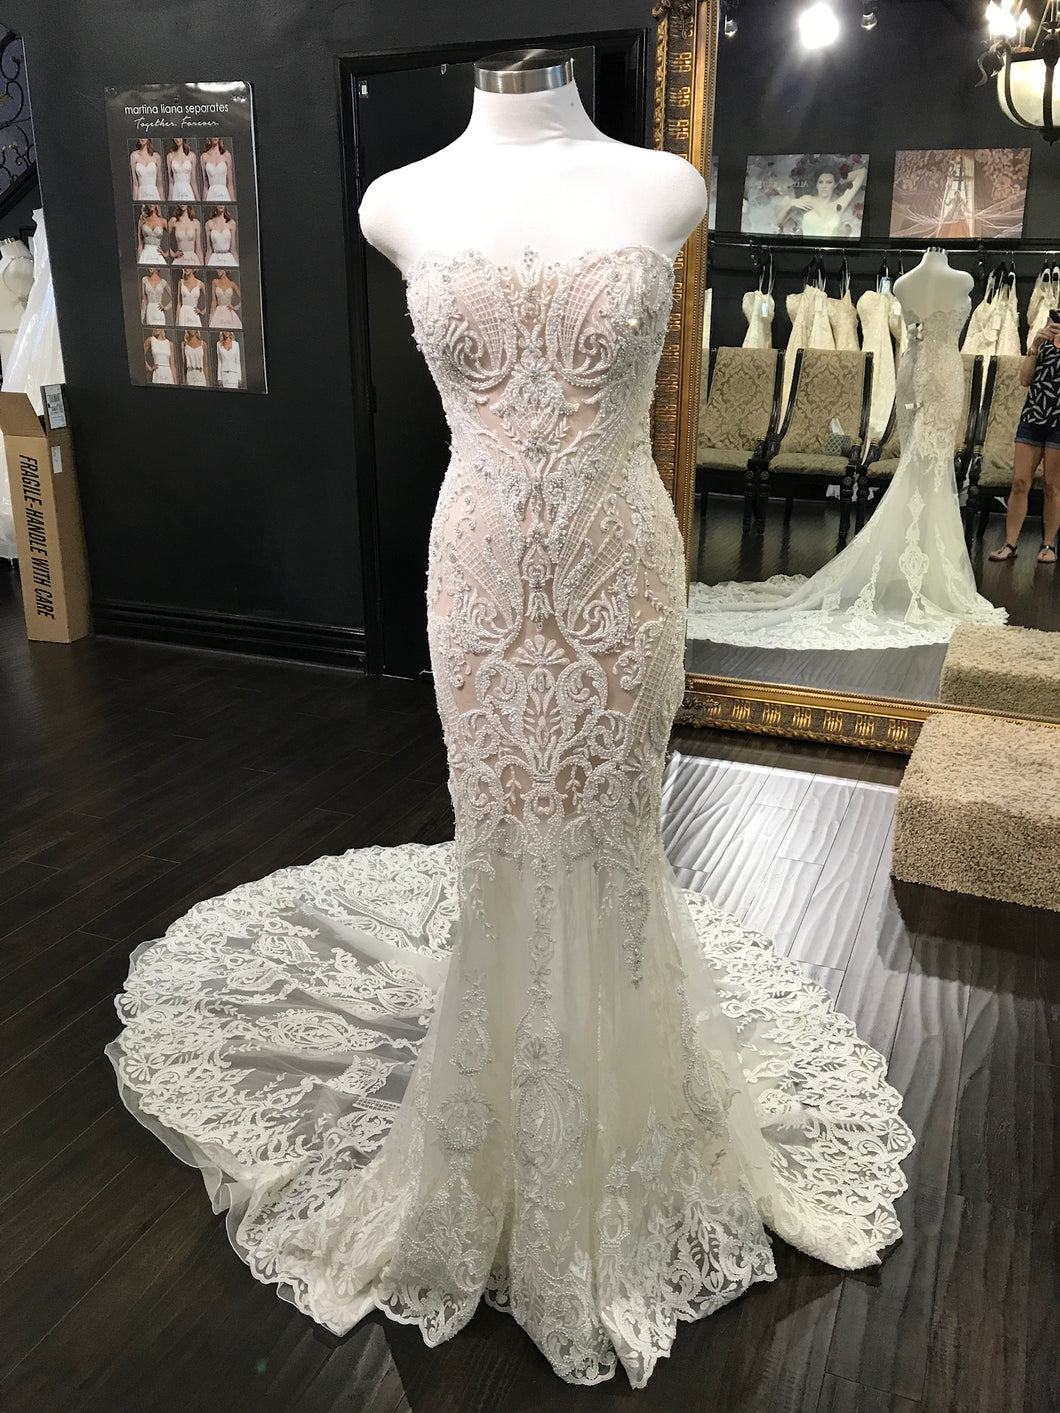 Badgley Mischka 'Avita' size 6 new wedding dress front view on mannequin